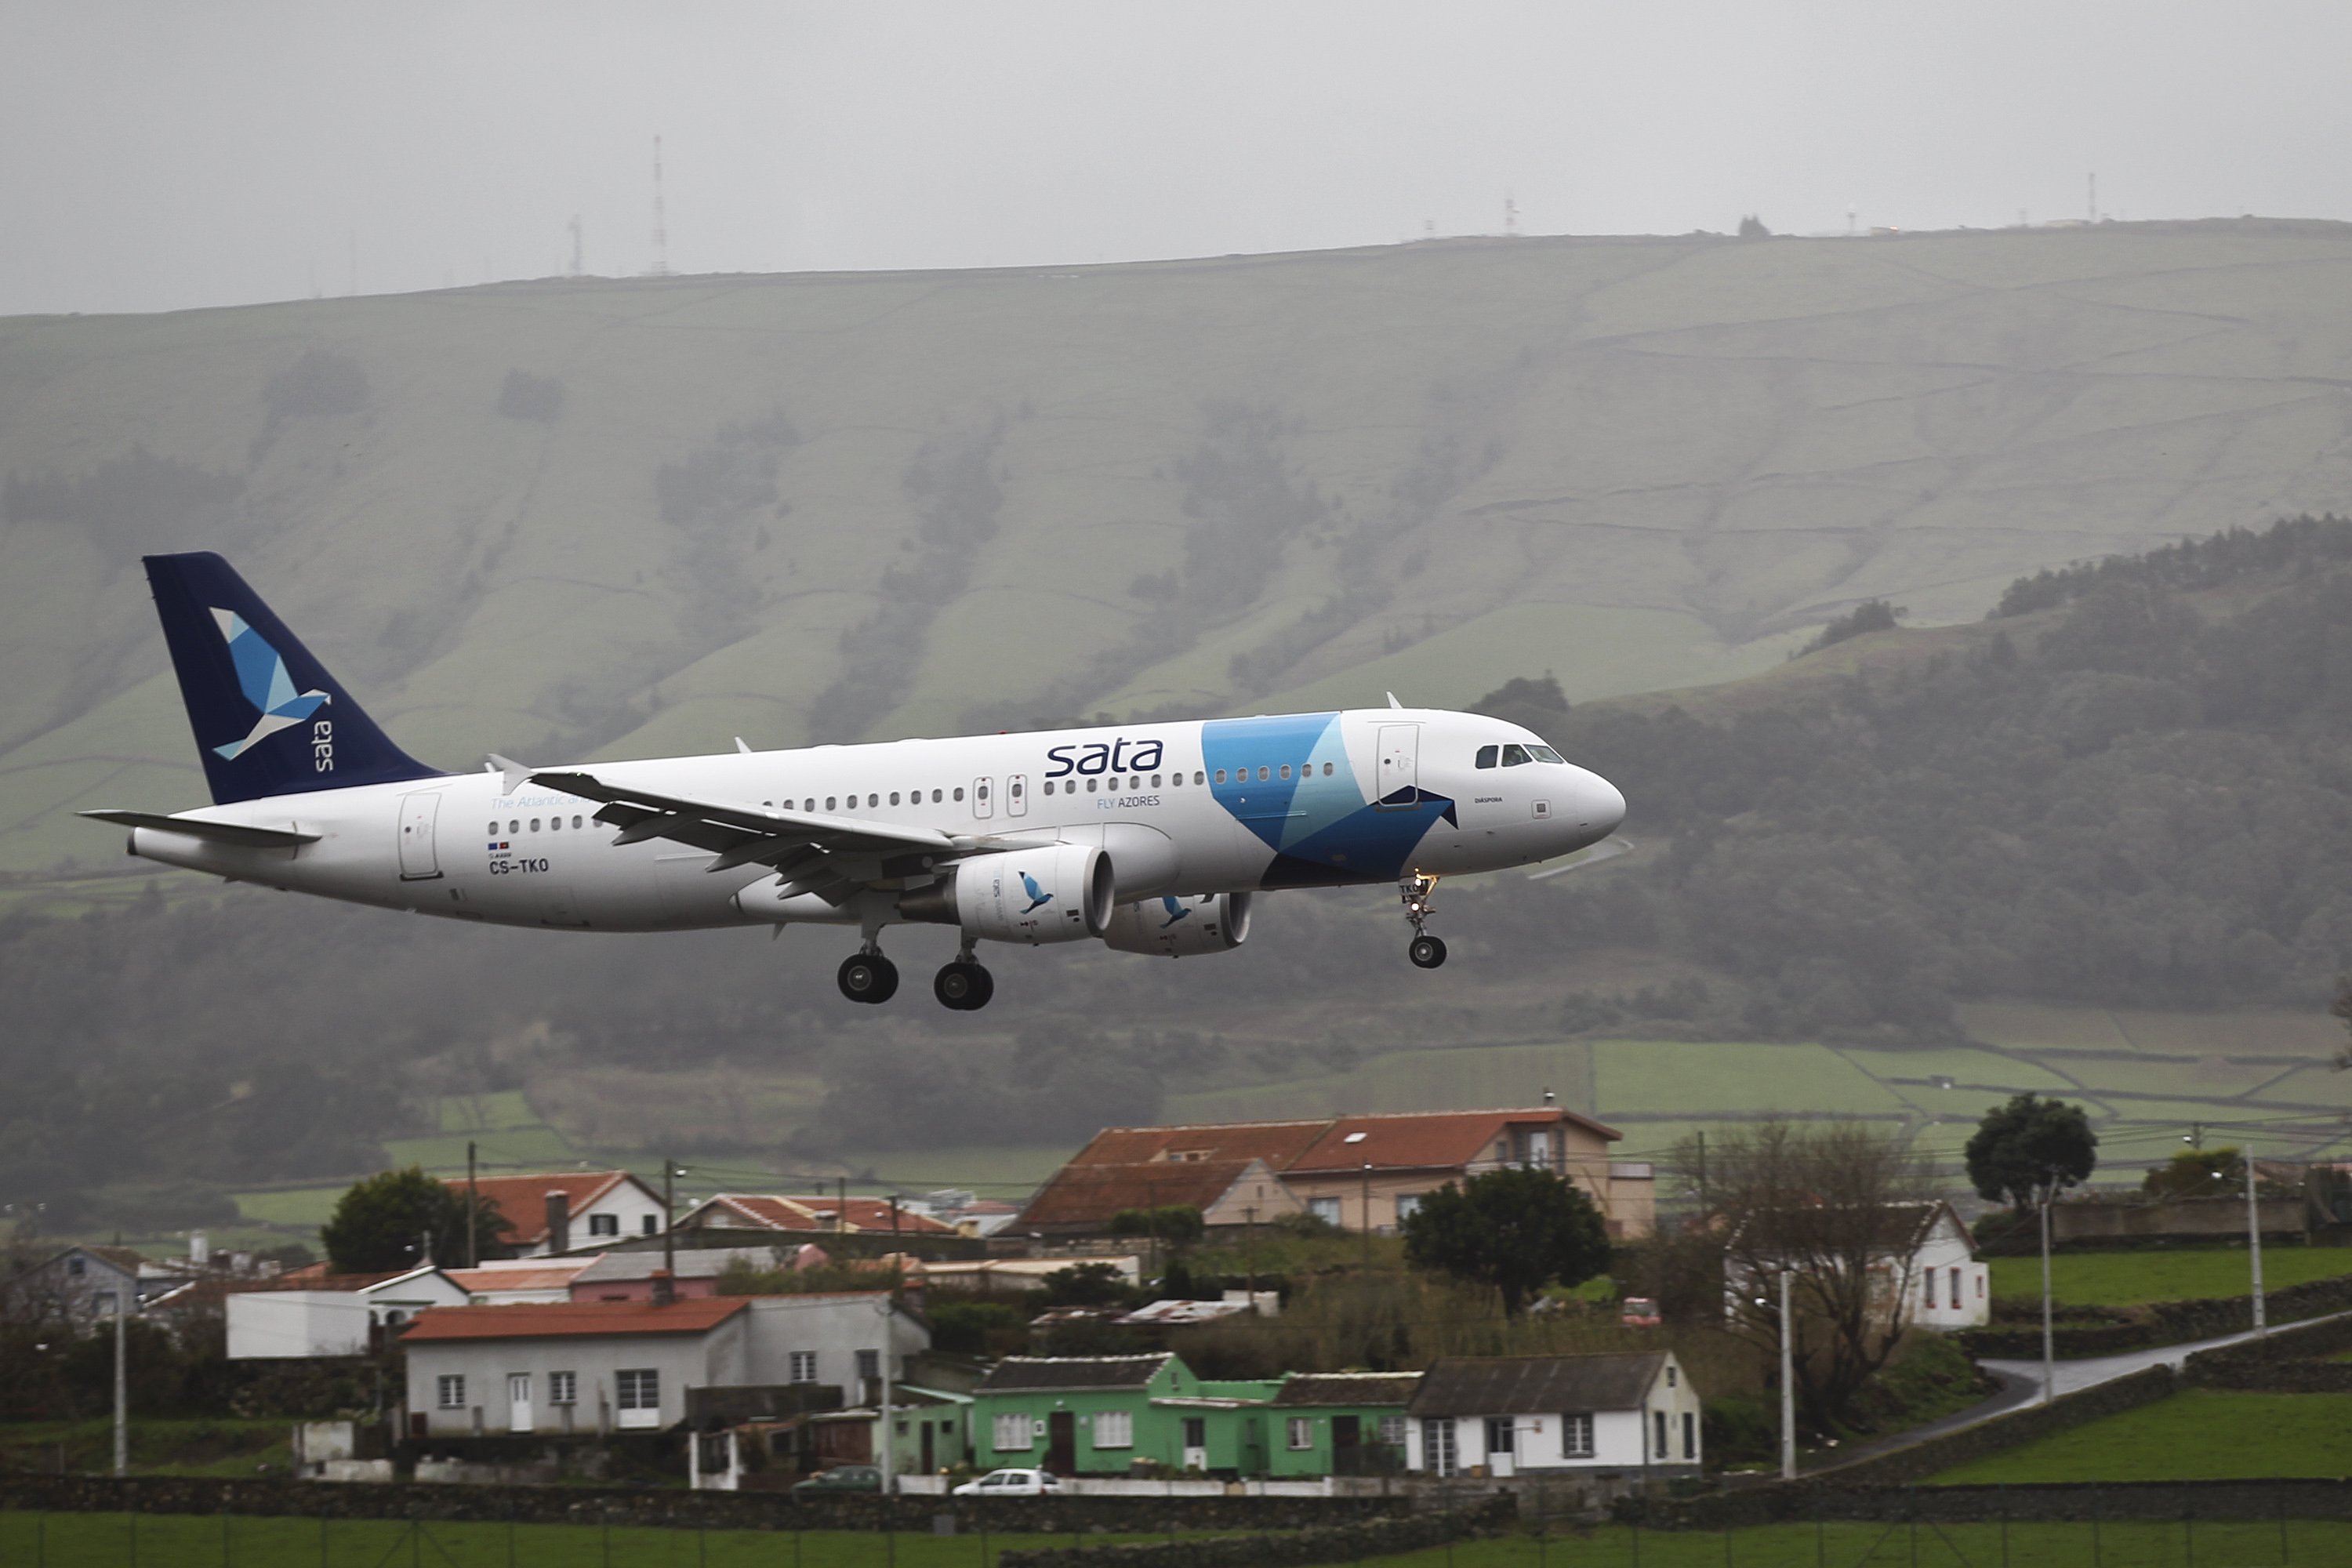 Loftleiðir-Icelandic ehf, do Grupo Icelandair, pré-qualificada para a privatização da SATA